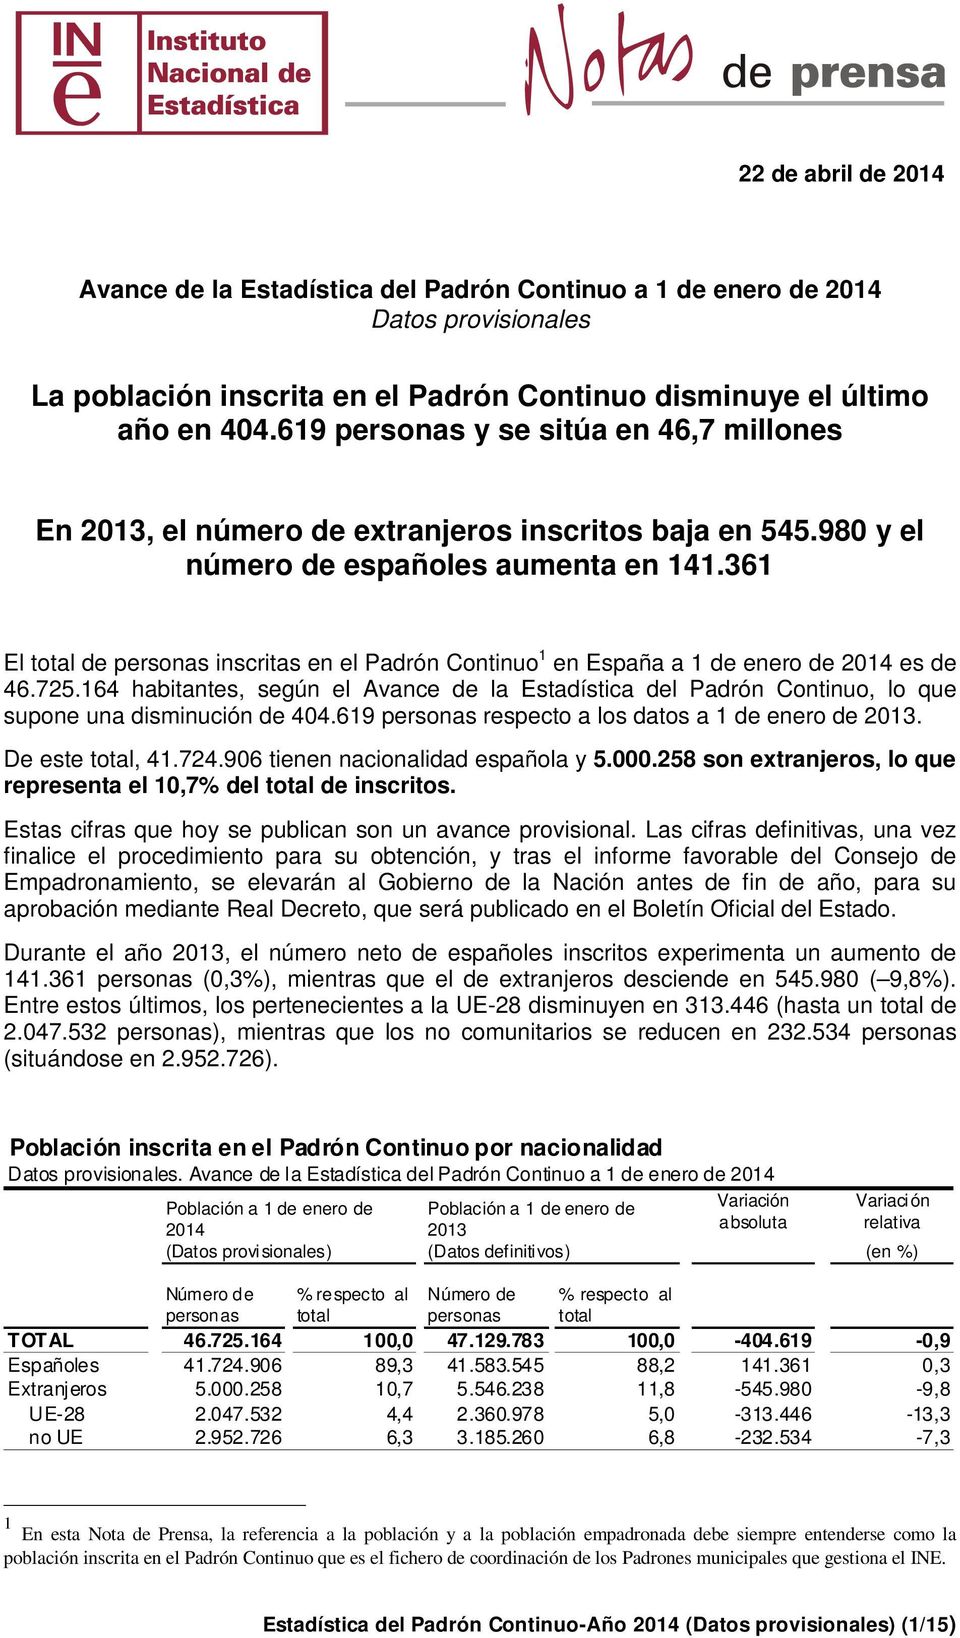 361 El total de personas inscritas en el Padrón Continuo 1 en España a 1 de enero de 2014 es de 46.725.164, según el Avance de la Estadística del Padrón Continuo, lo que supone una disminución de 404.